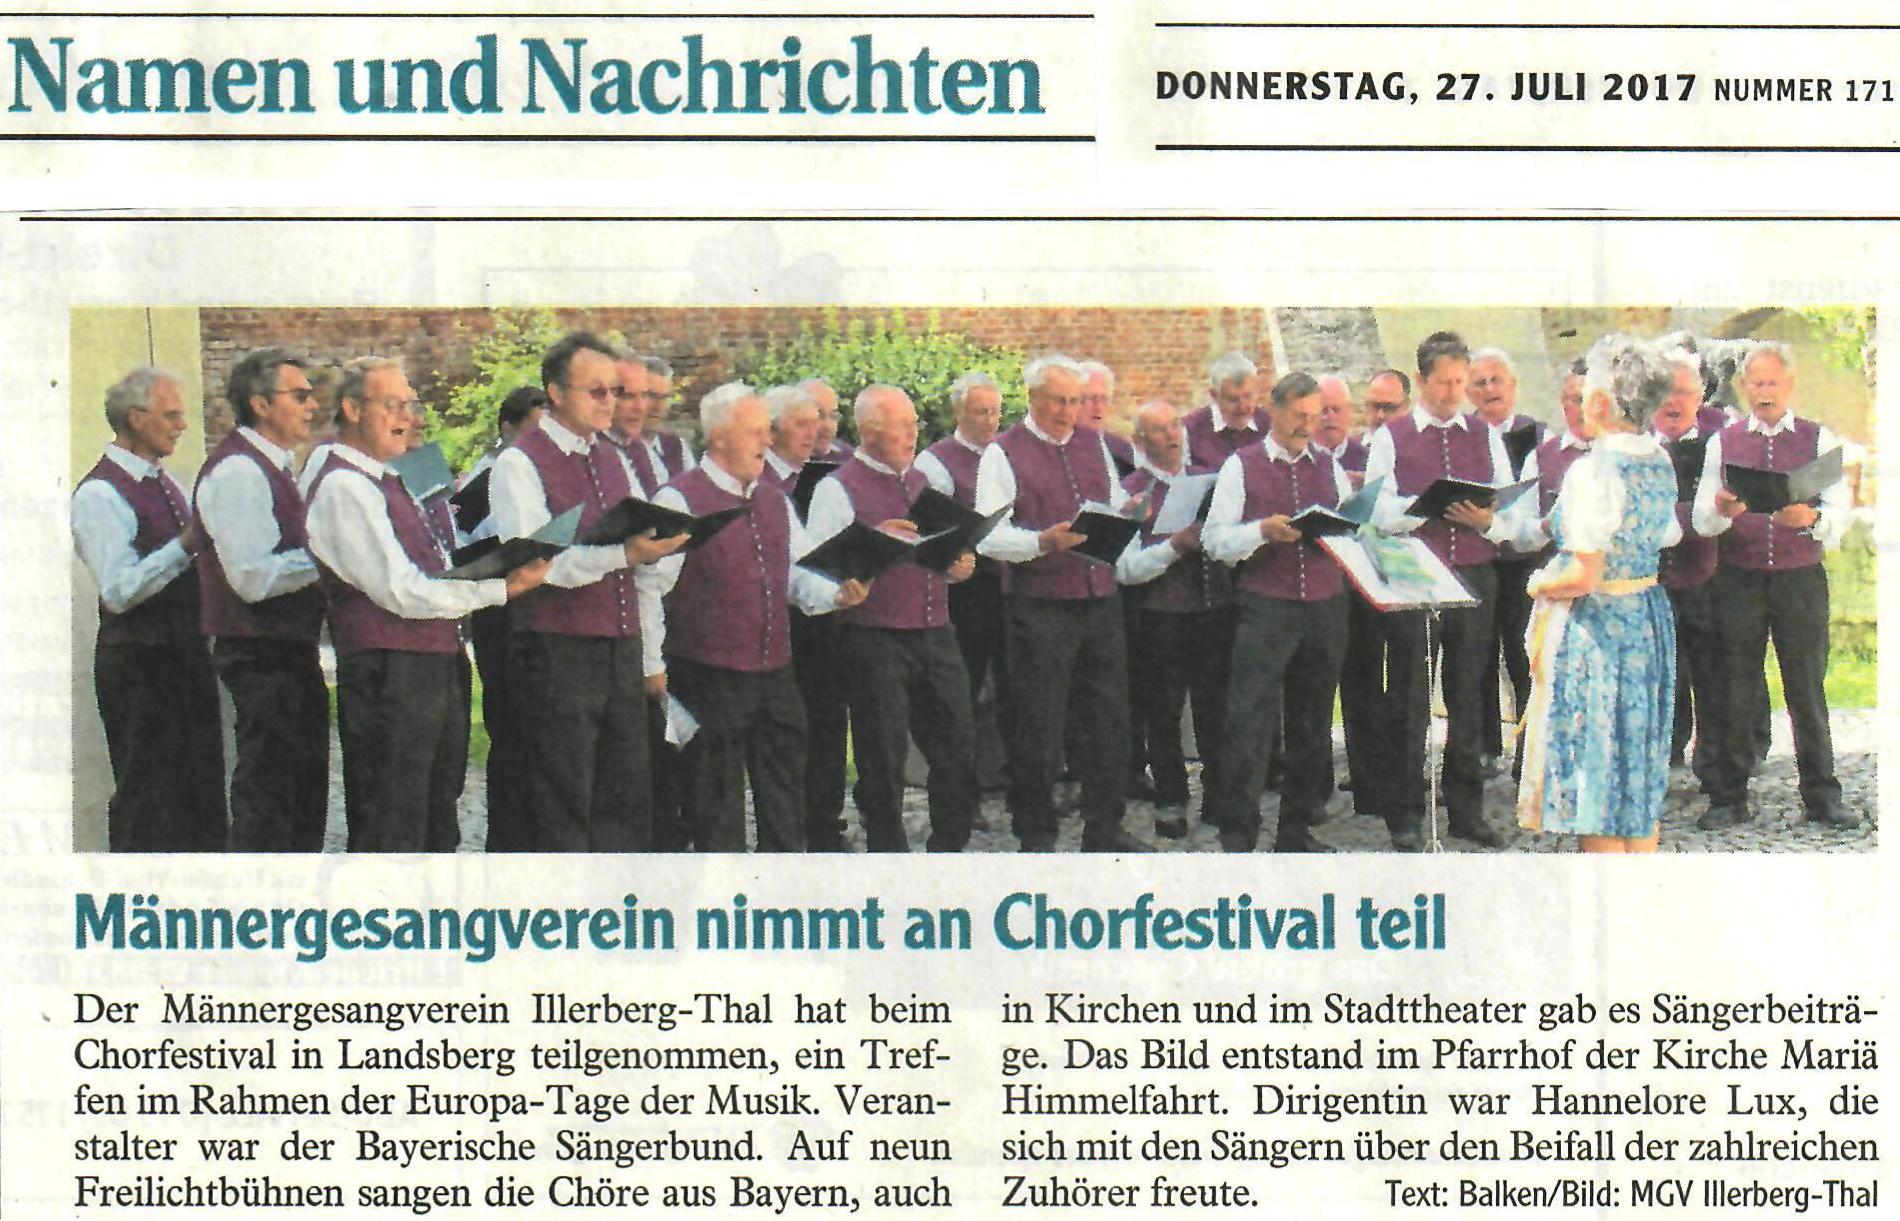 Auftritt des Männerchors bei den Europa-Tagen der Musik in Landsberg am 01. Juli 2017